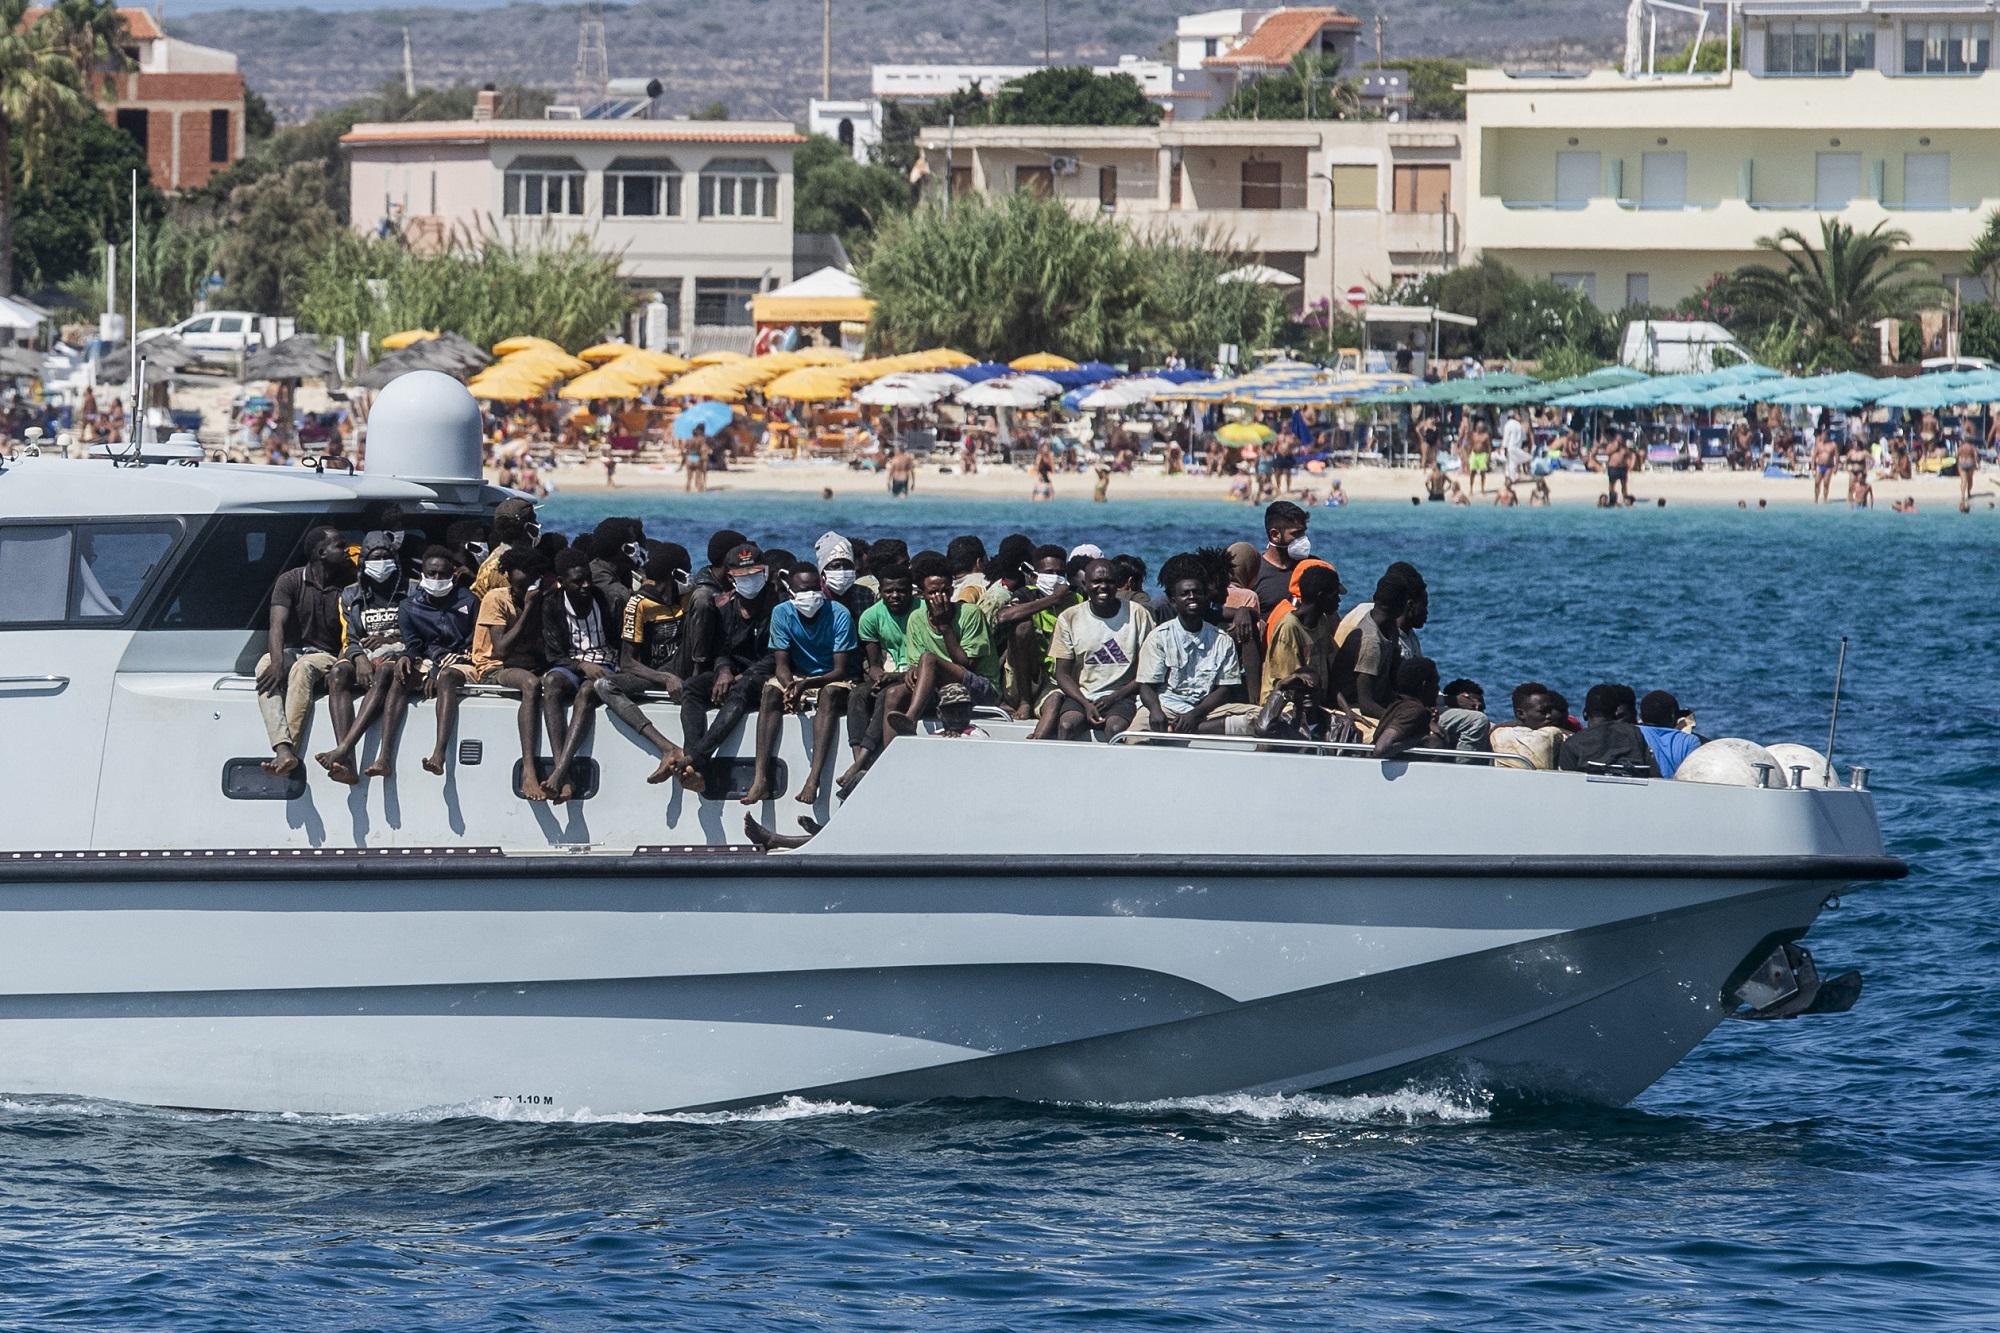 Migranti - in 180 sbarcati a Lampedusa - Sull